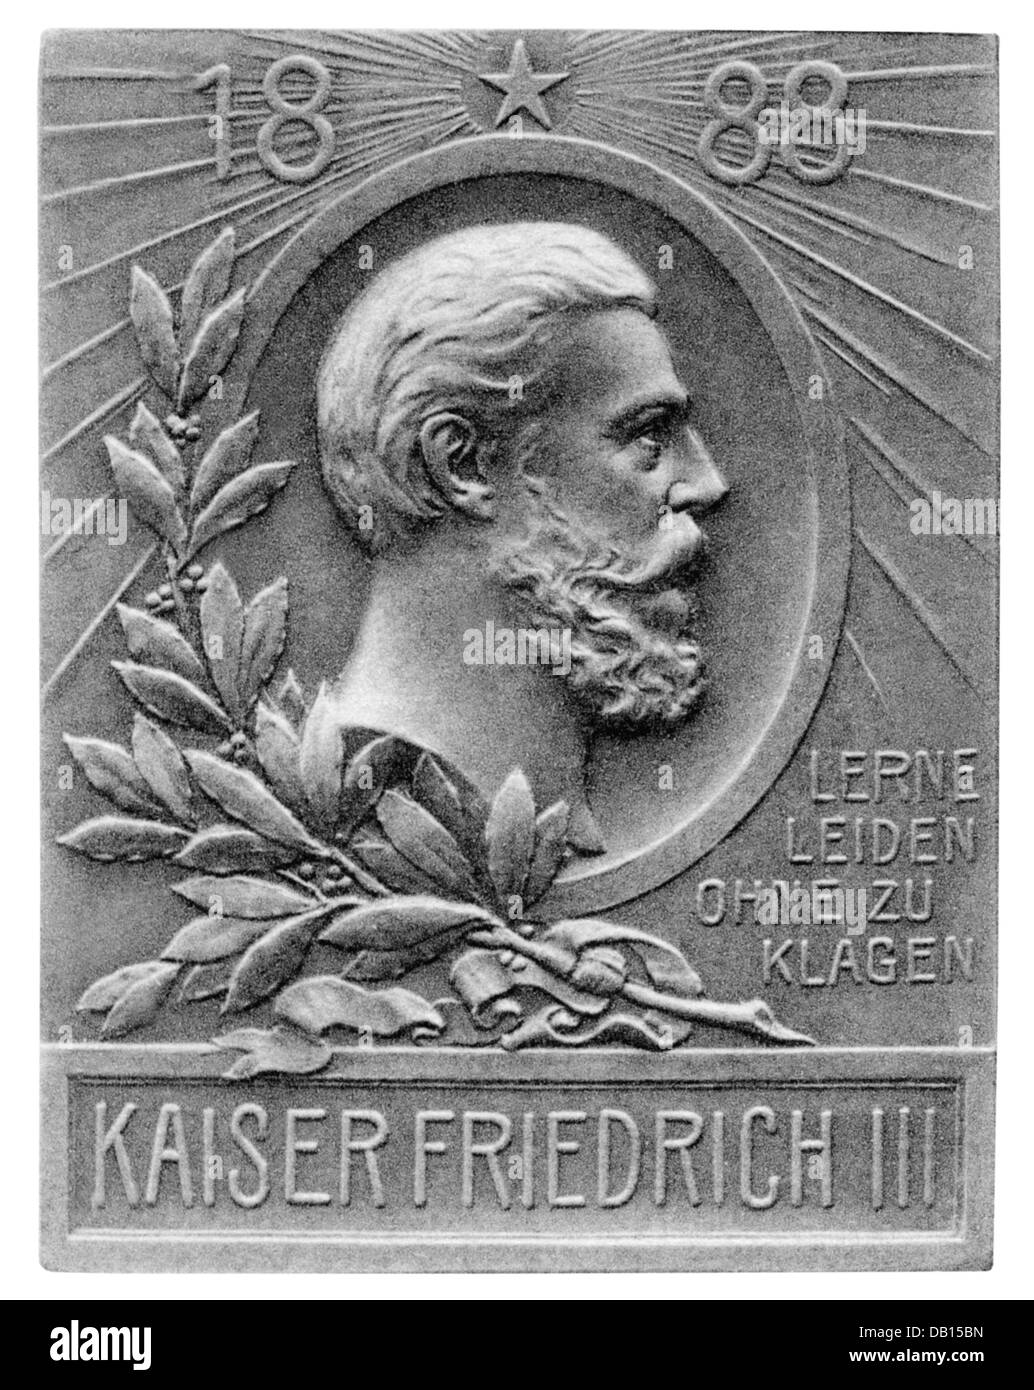 Frederick III, 18.10.1831 - 15.6.1888, German emperor 9.3.1888 - 15.6.1888, portrait, badge, Stuttgarter Metallwarenfabrik Mayer & Wilhelm, famous men series, Stuttgart, circa 1900, Stock Photo